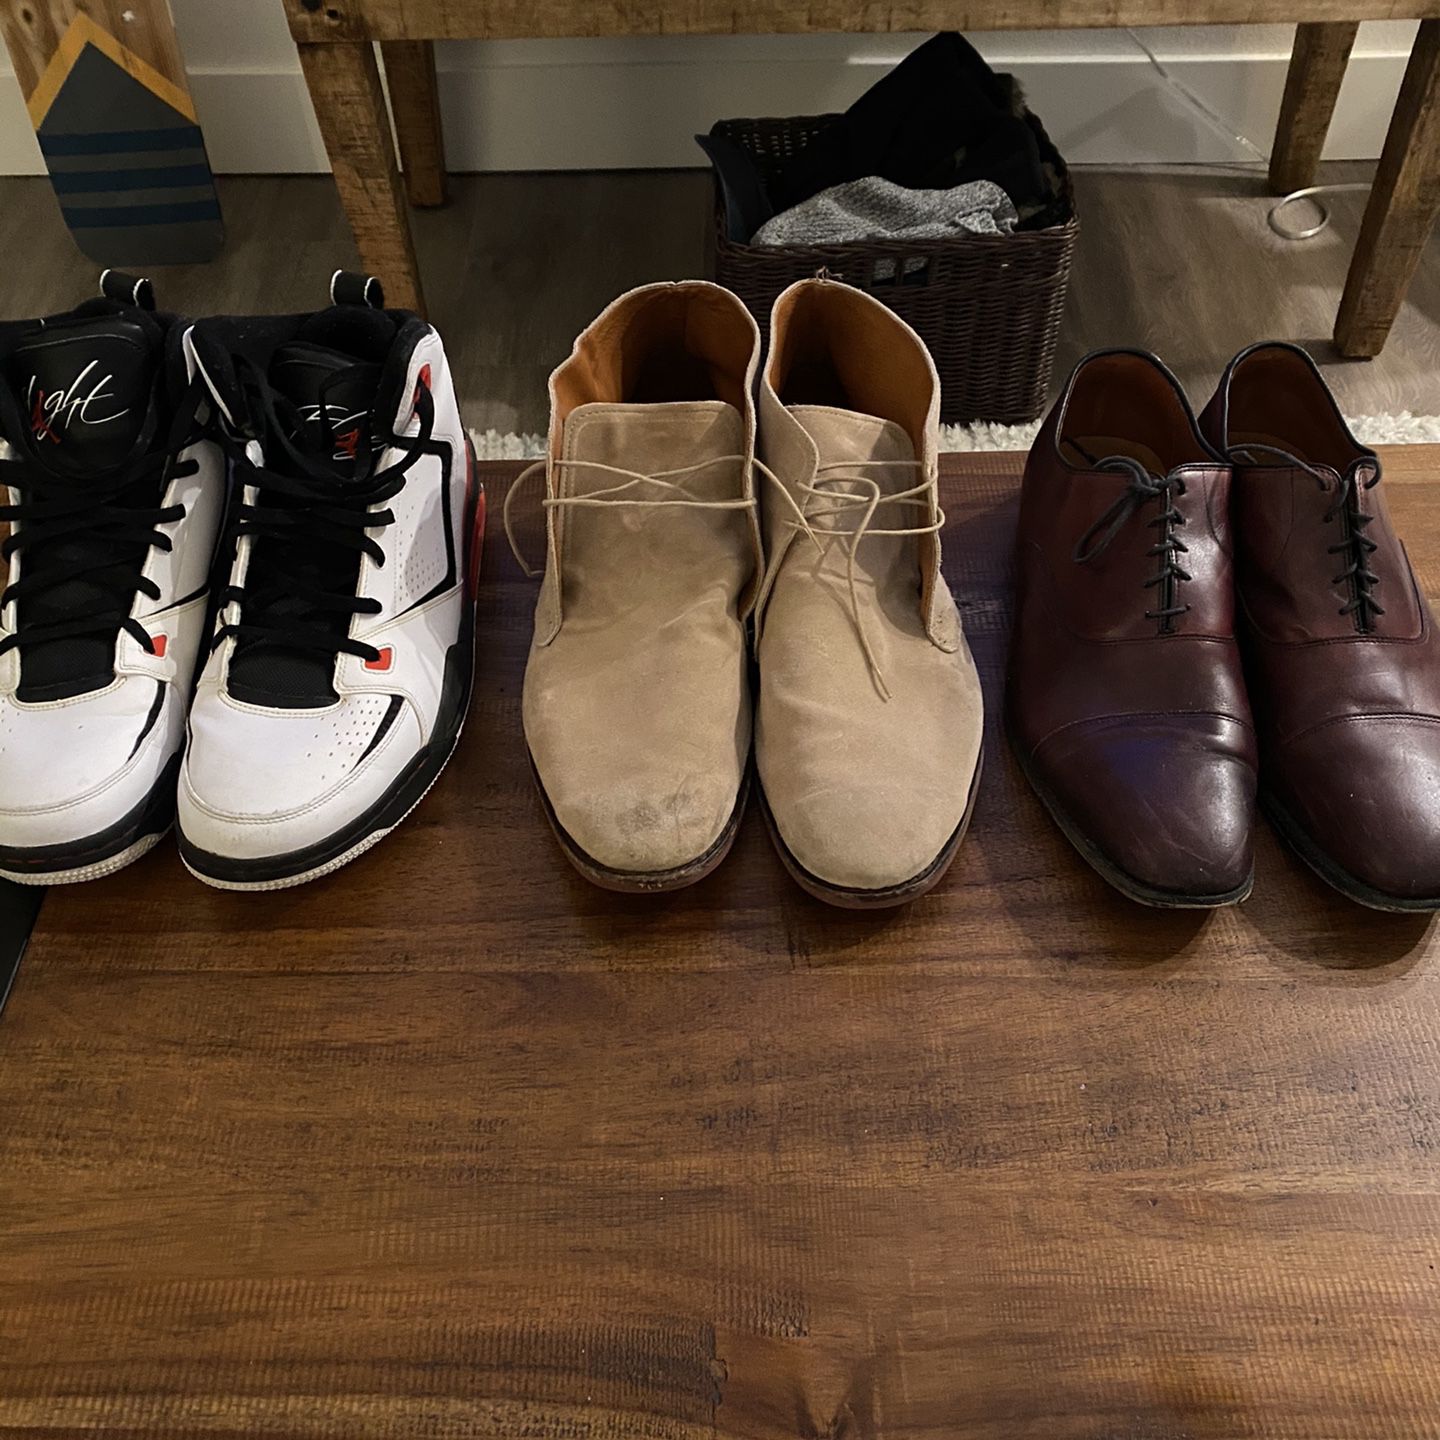 Jordans/2 Allen Edmonds Shoes